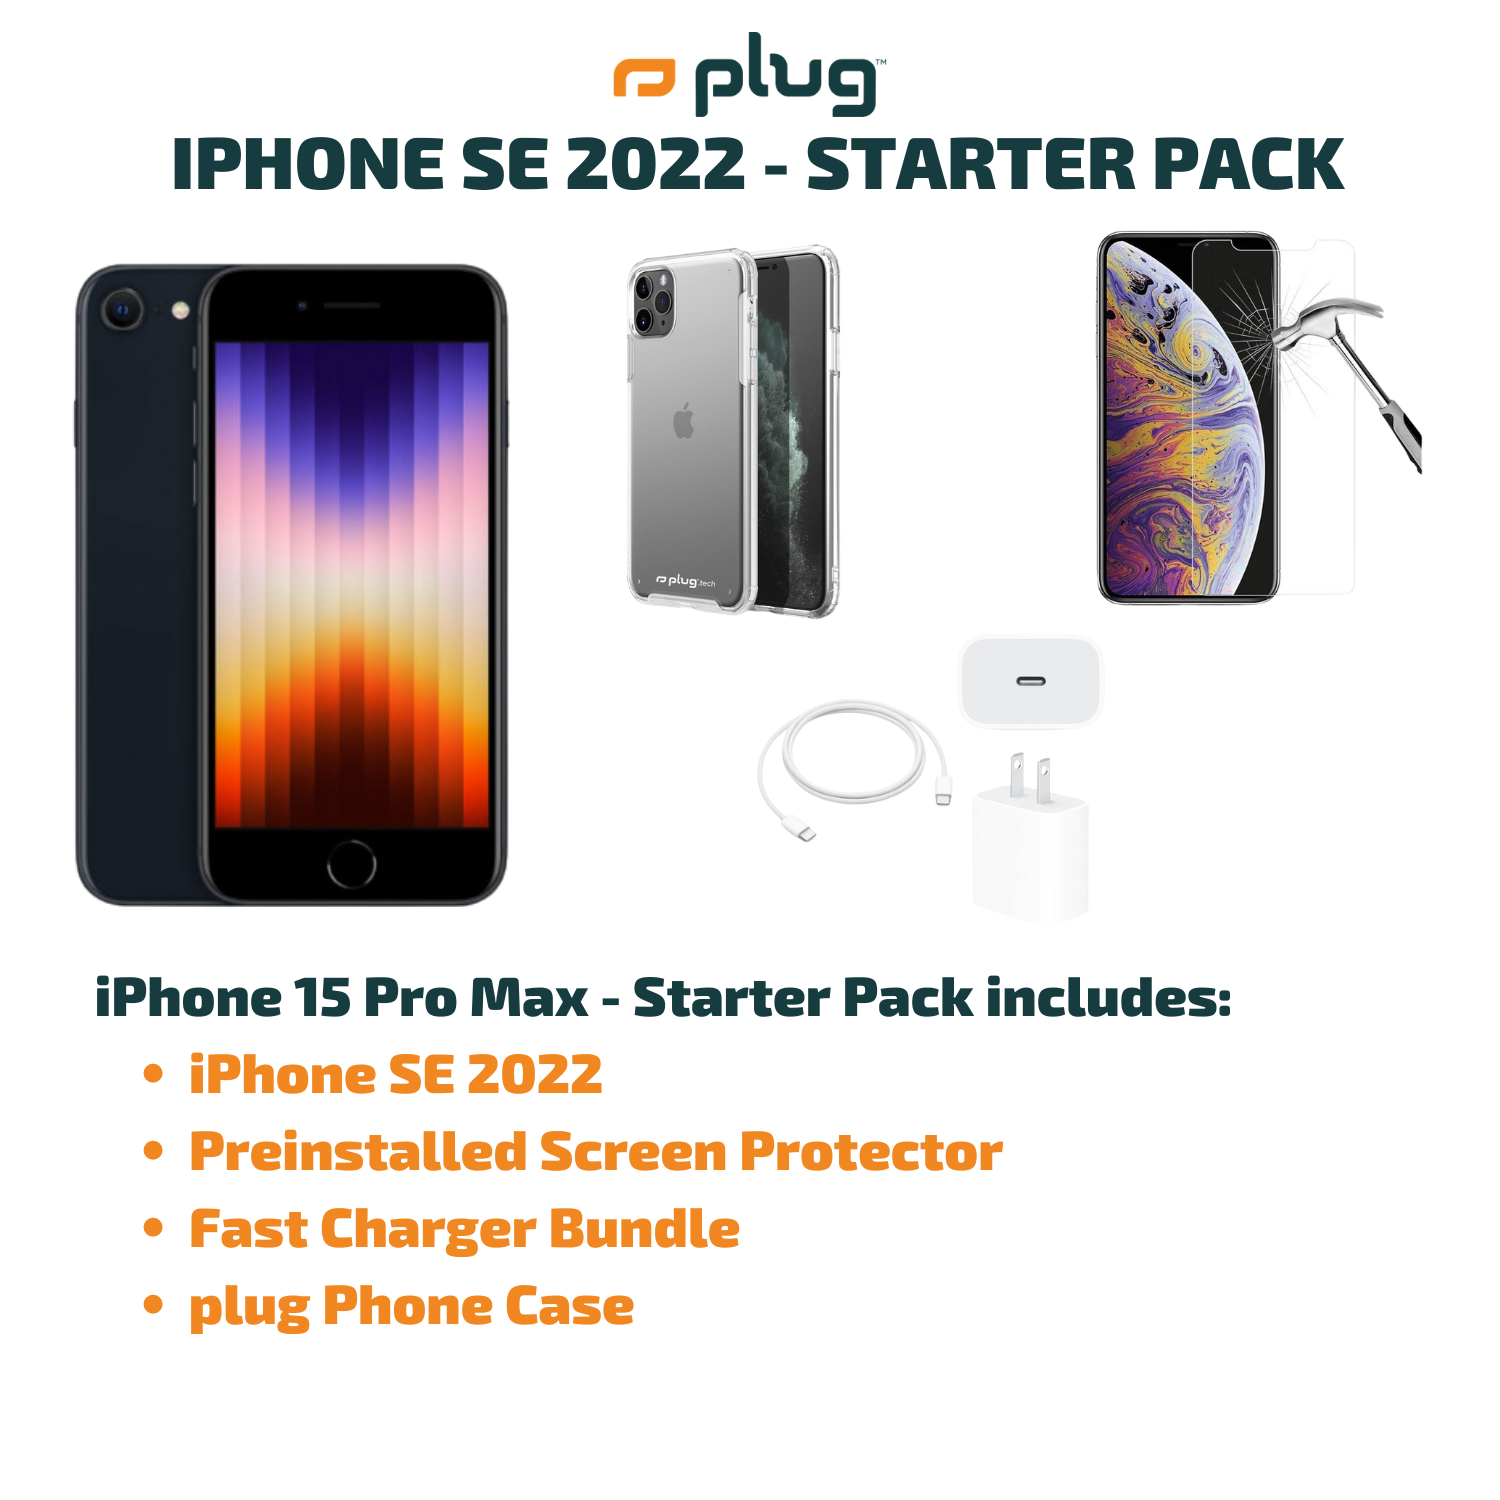 iPhone SE 2022 - Paquete de inicio